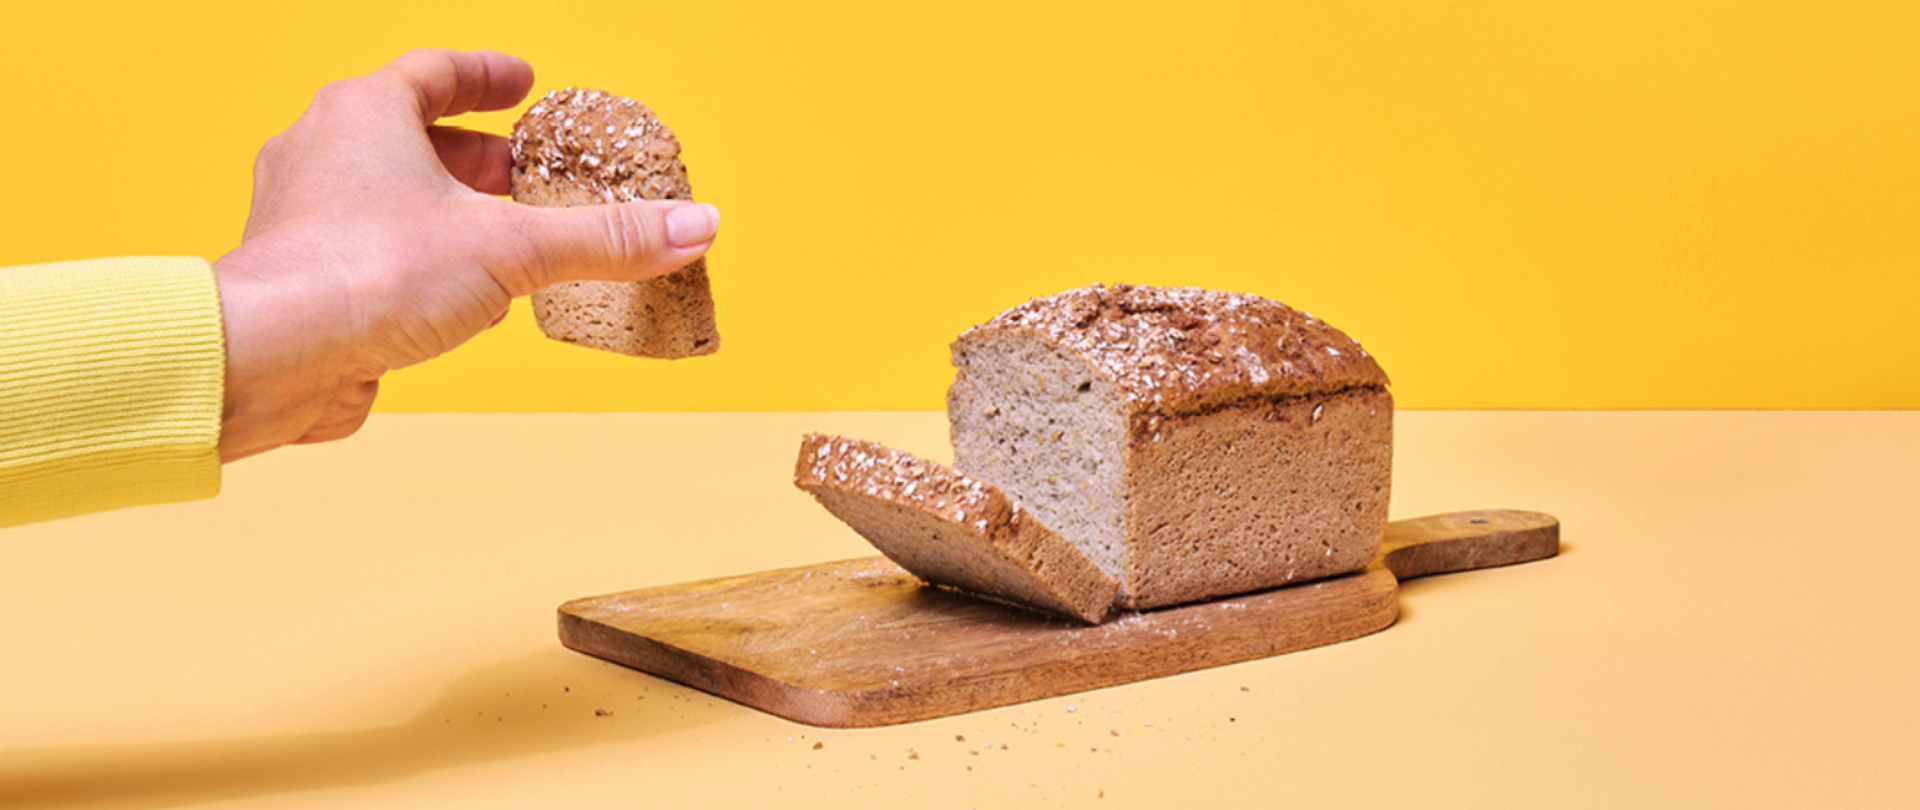 Zdjęcia przedstawia rękę , która bierze z deski odkrojoną kromkę chleba. Cały chleb leży na drewnianej podstawce . 